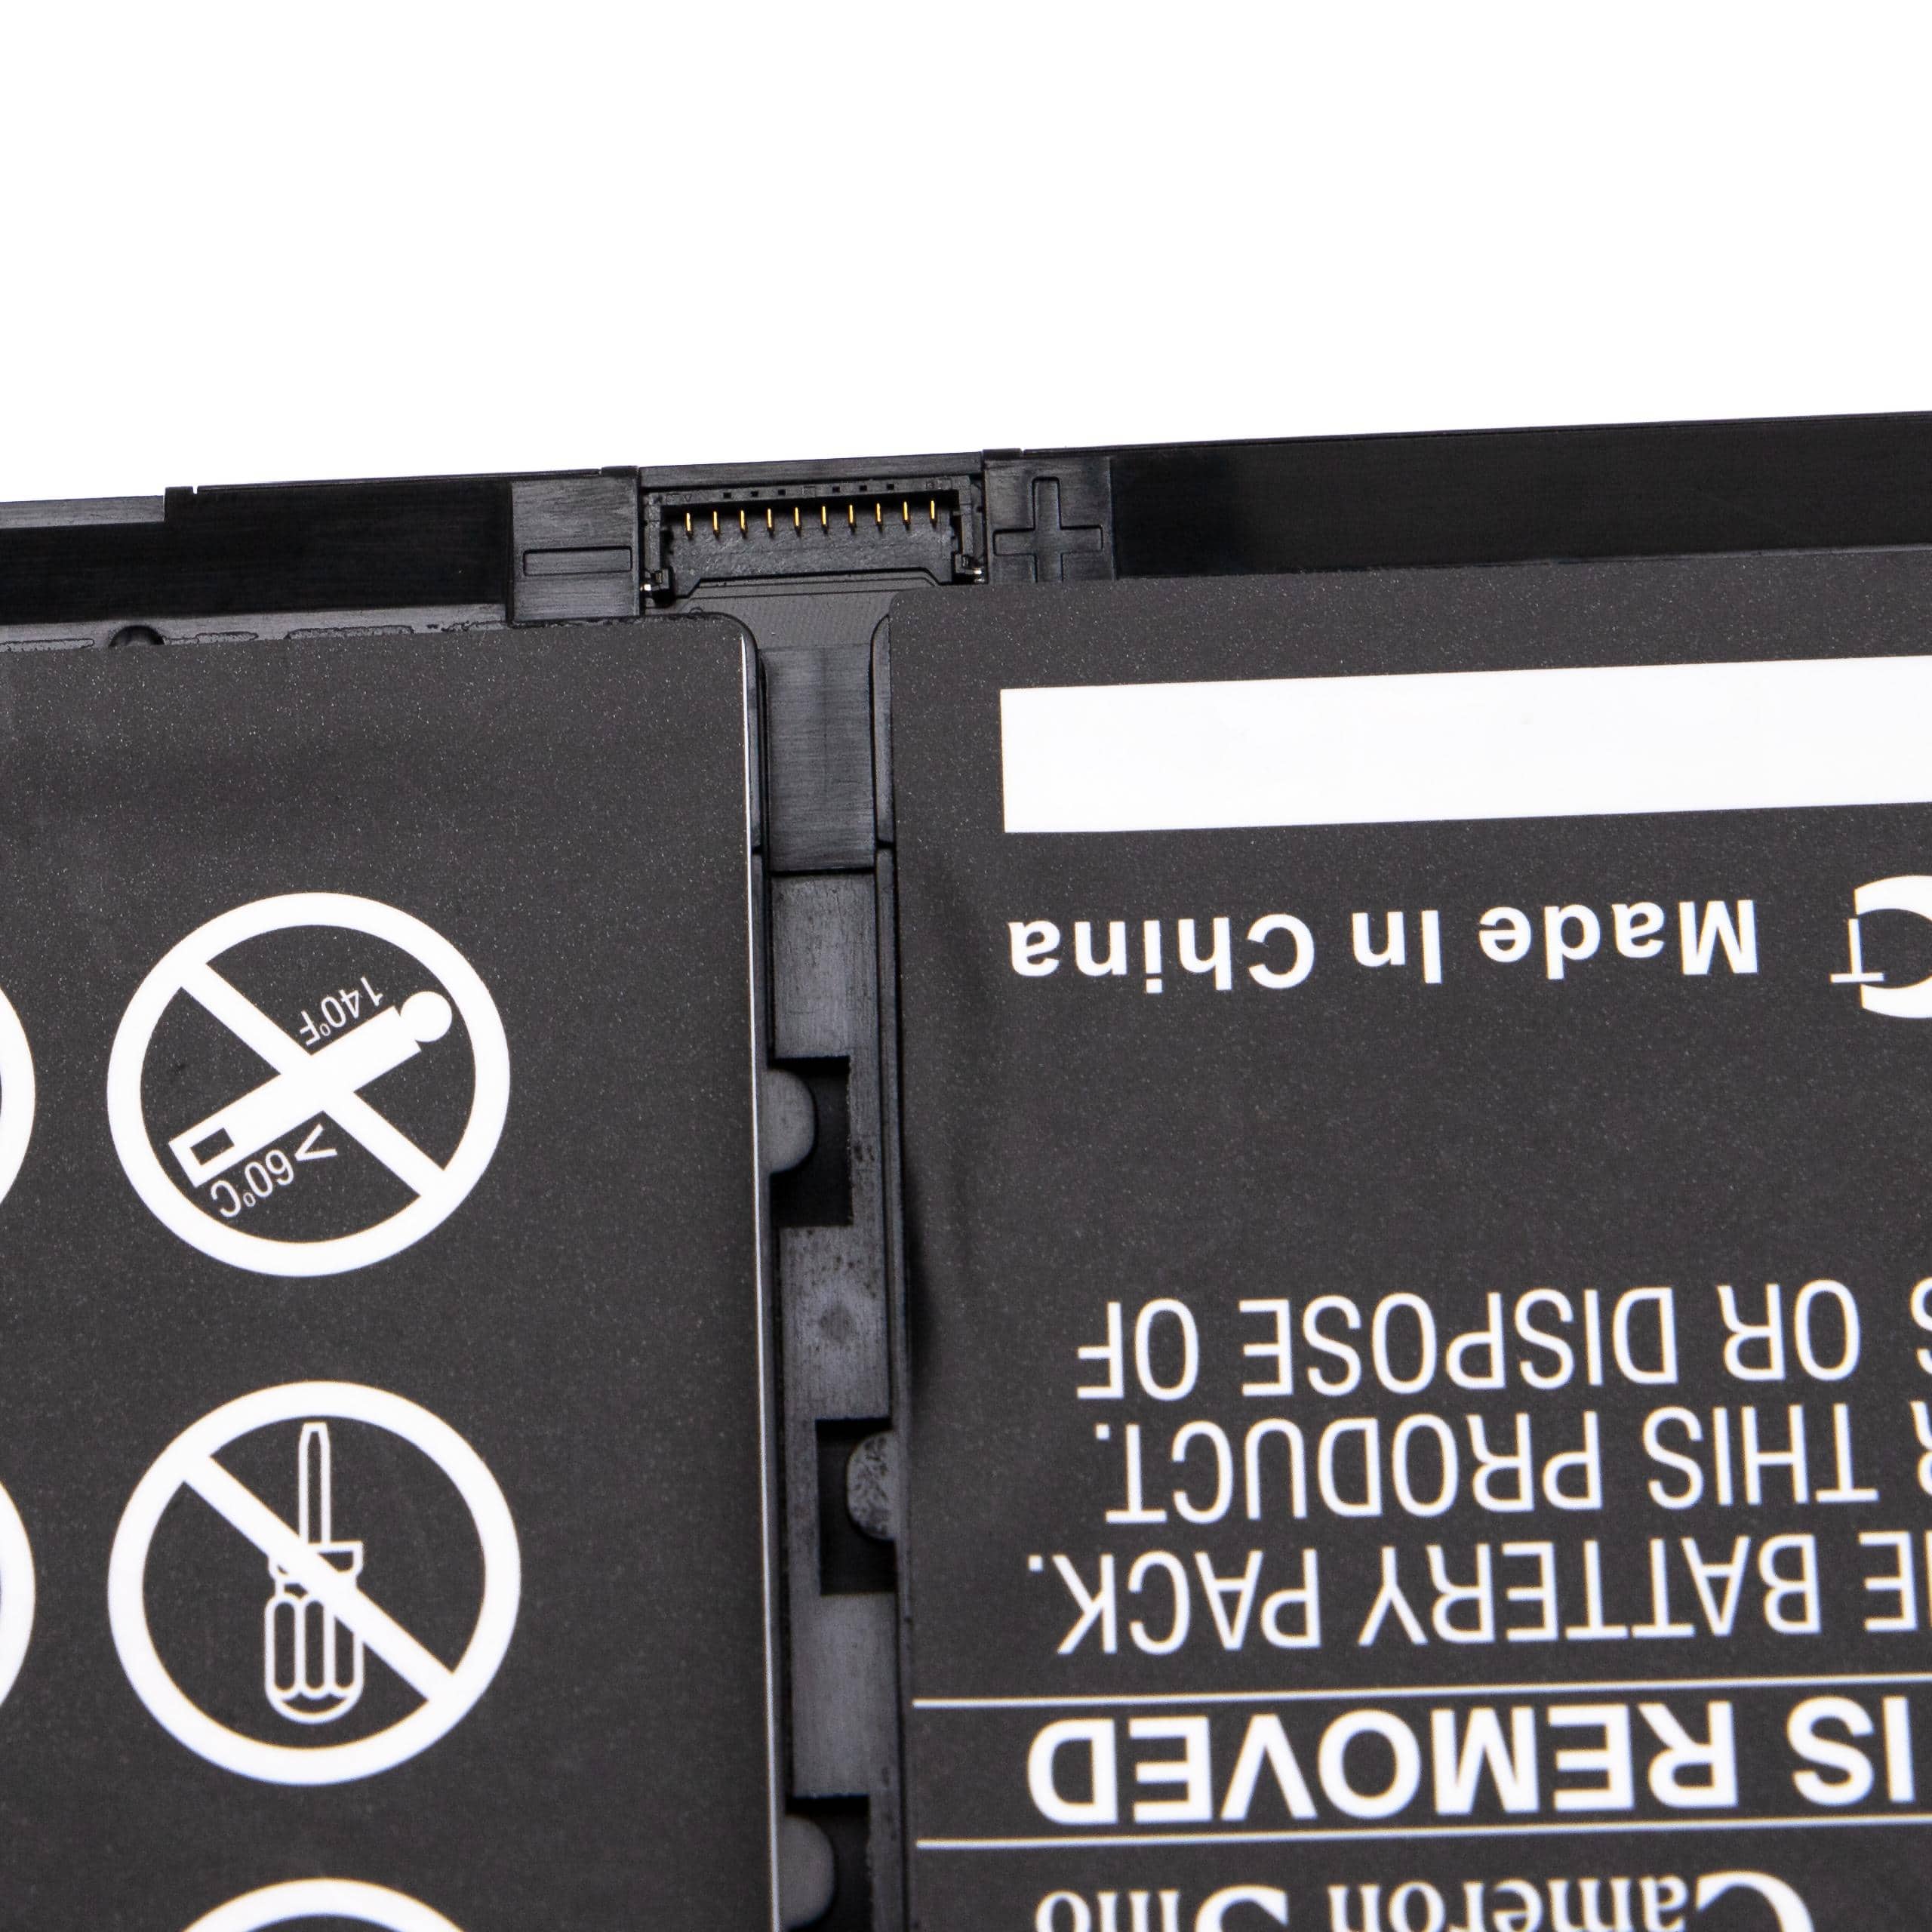 Batterie remplace Dell 9077G, H5CKD, TXD0 pour ordinateur portable - 3450mAh 15V Li-polymère